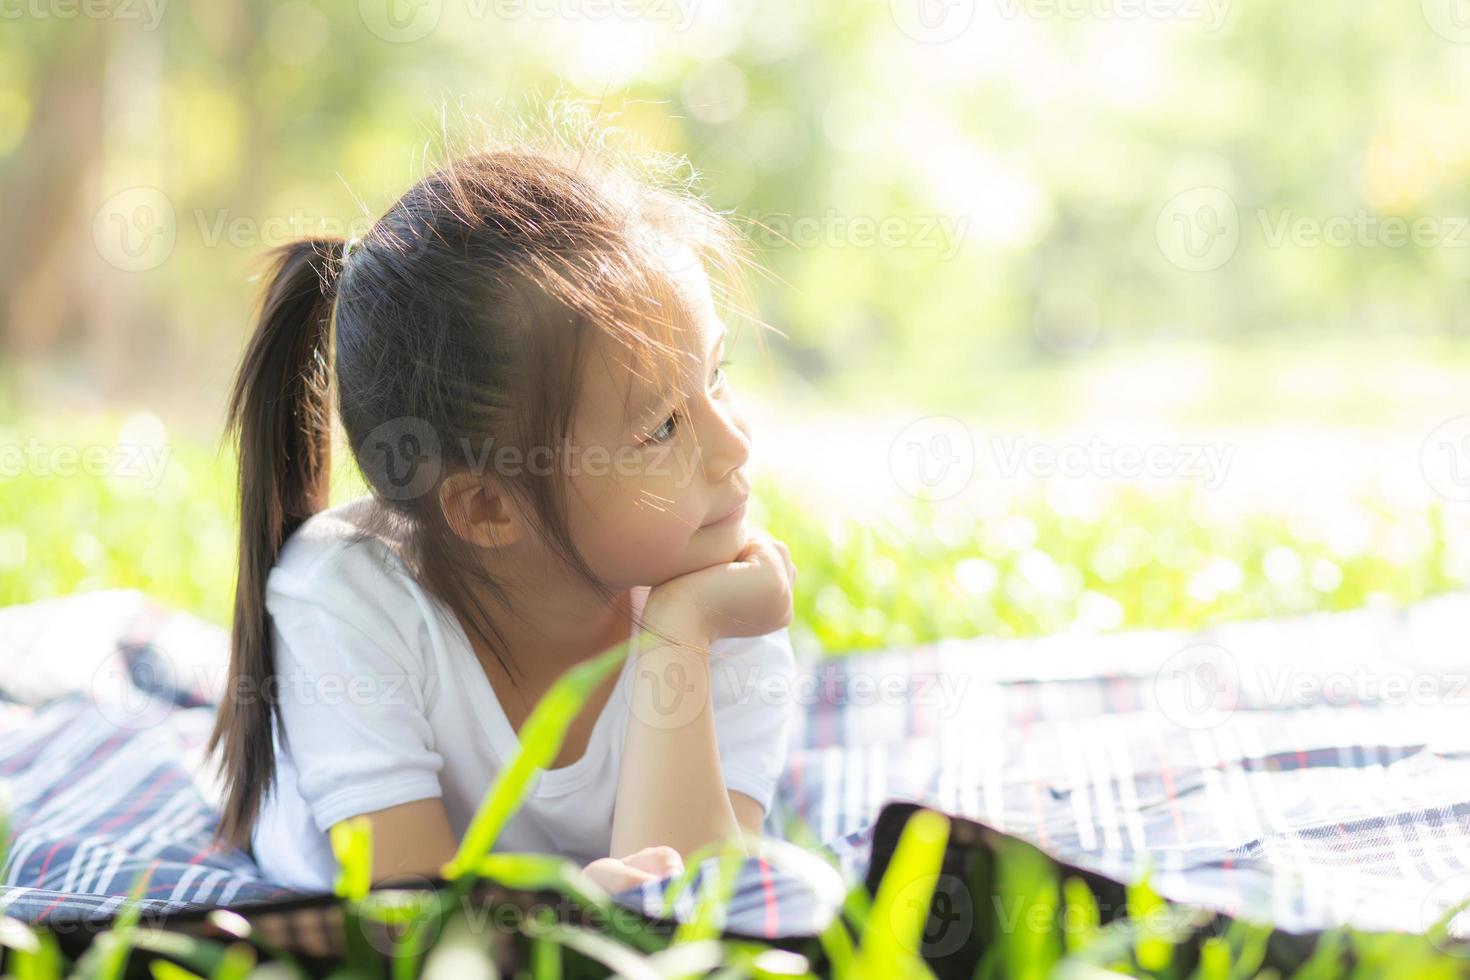 rosto de retrato de menina asiática bonitinha e felicidade e diversão infantil no parque no verão, sorria e feliz da criança asiática e relaxe no jardim, conceito de infância de estilo de vida. foto